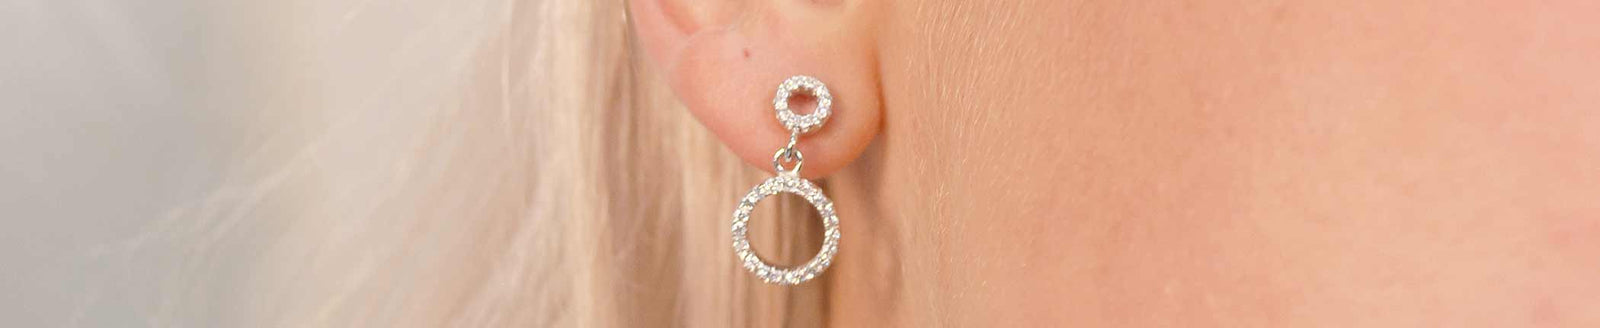 COMPARE CZ STUD EARRINGS  Jewelry Secrets